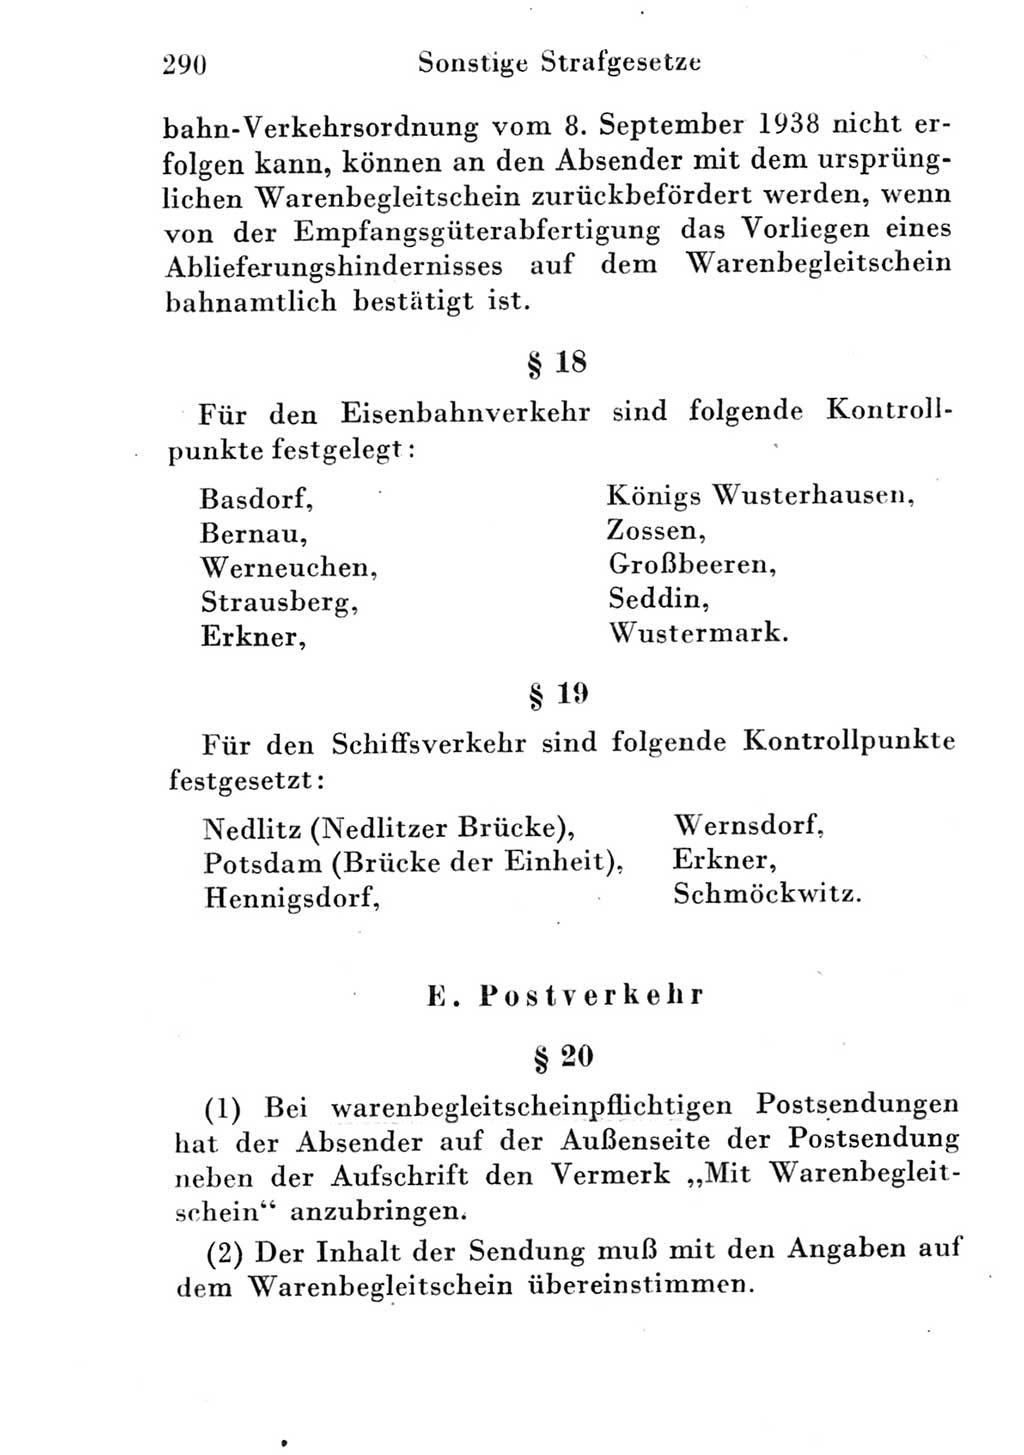 Strafgesetzbuch (StGB) und andere Strafgesetze [Deutsche Demokratische Republik (DDR)] 1951, Seite 290 (StGB Strafges. DDR 1951, S. 290)